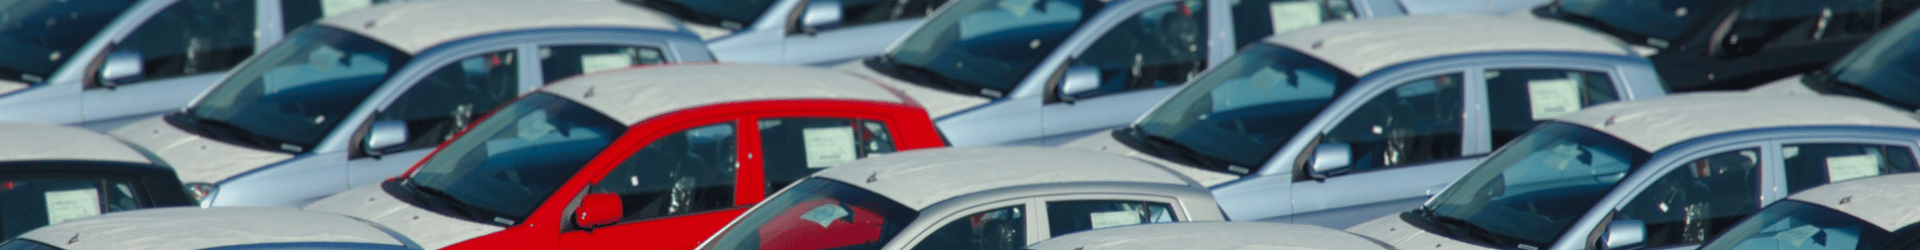 Car Dealership Financing Page Header